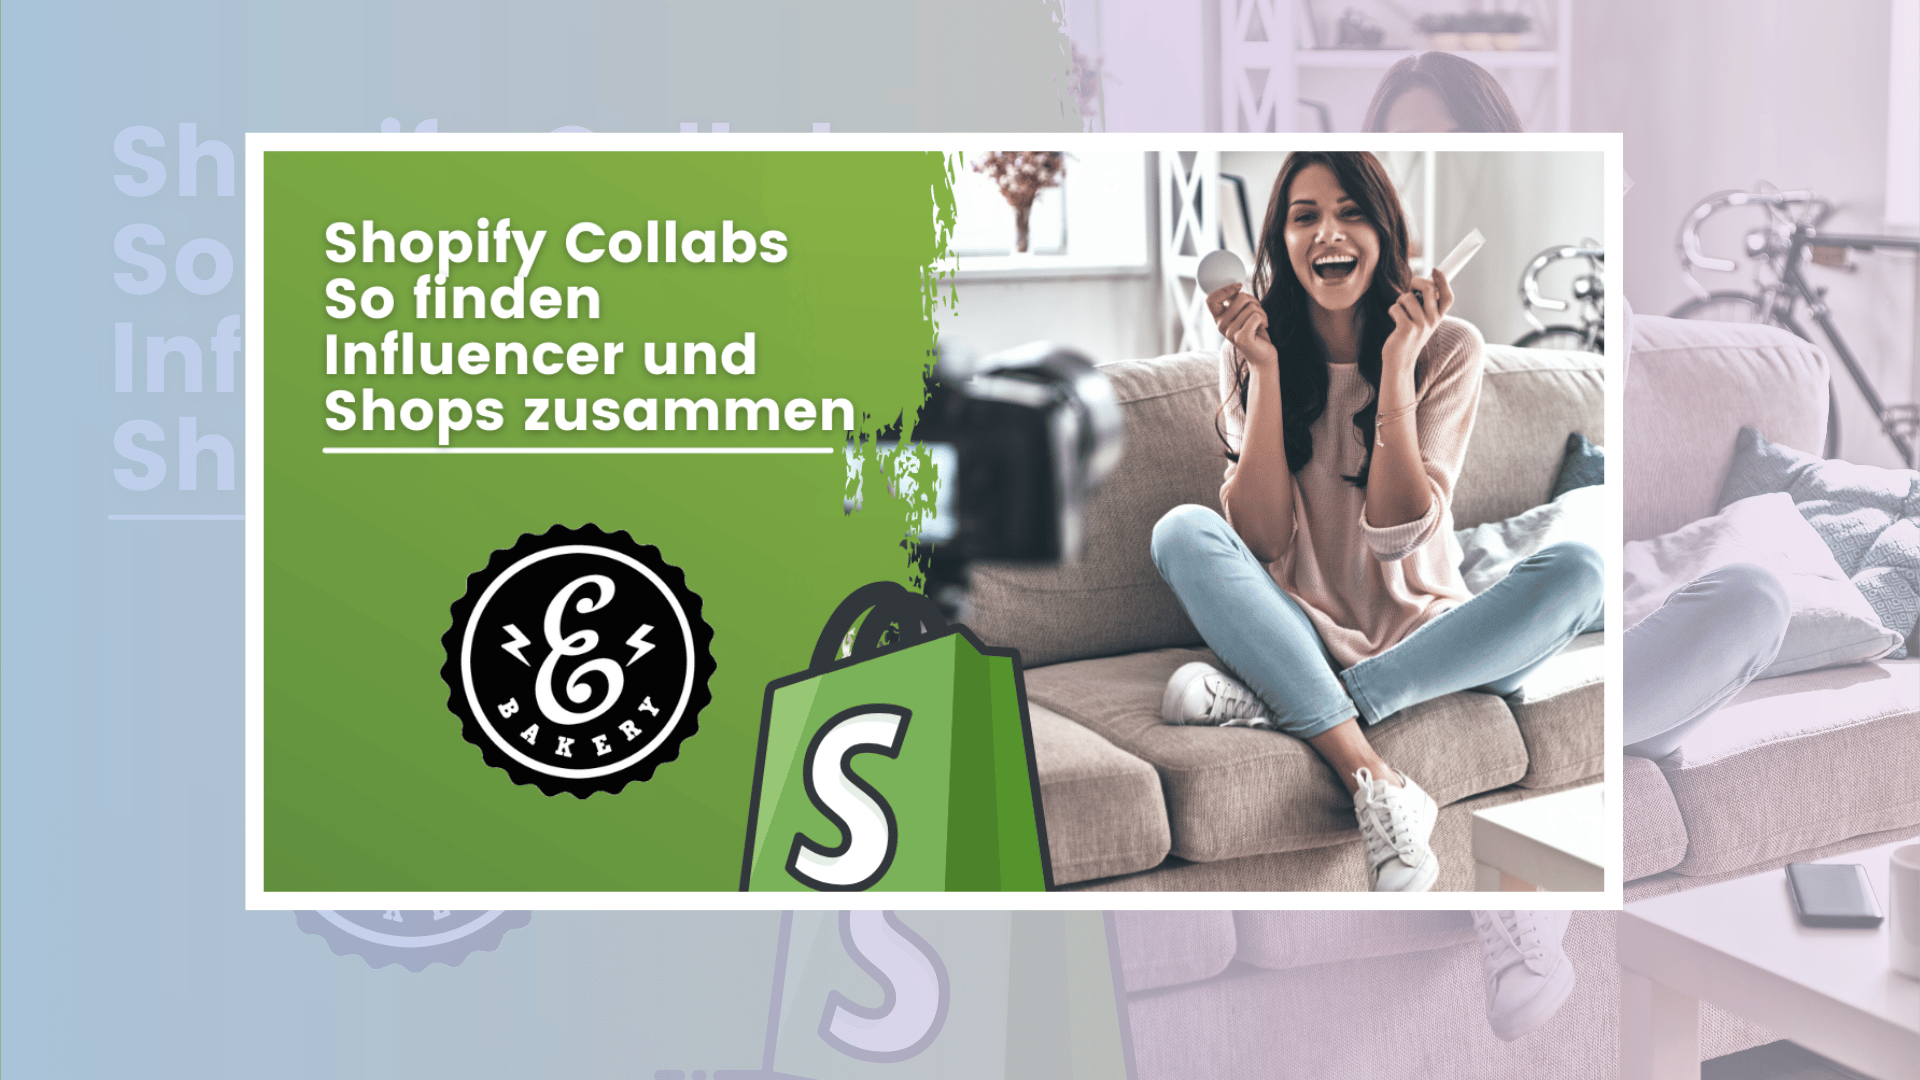 Shopify Collabs – so finden Influencer und Shops zusammen